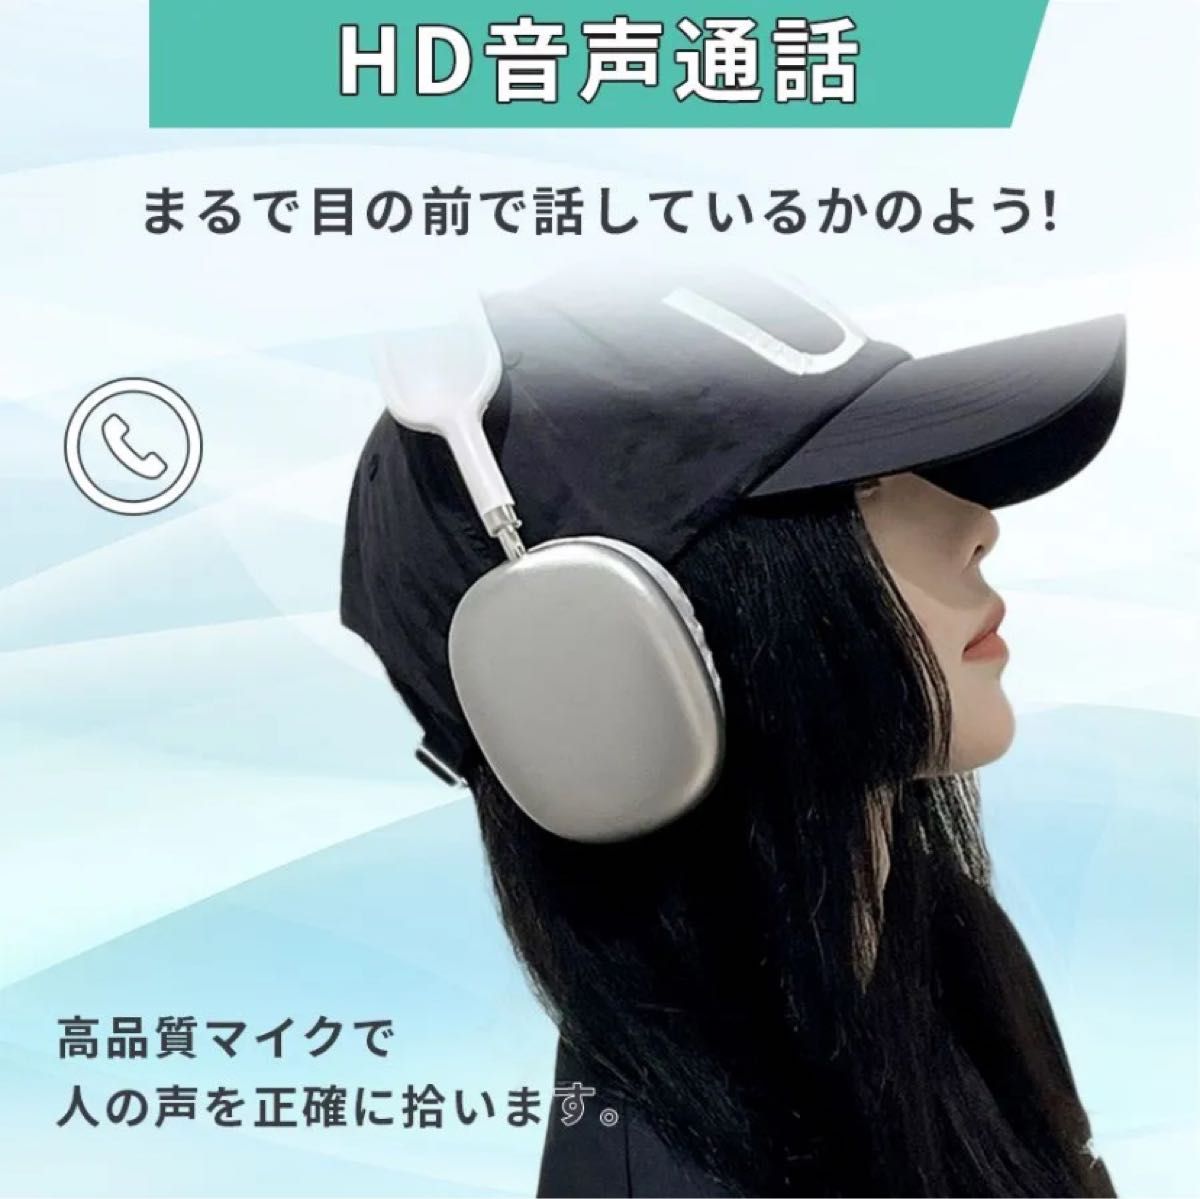 ヘッドホン bluetooth ワイヤレスヘッドフォン おしゃれ 安い ヘッドフォン ワイヤレスヘッドホン ヘッドセット 韓国